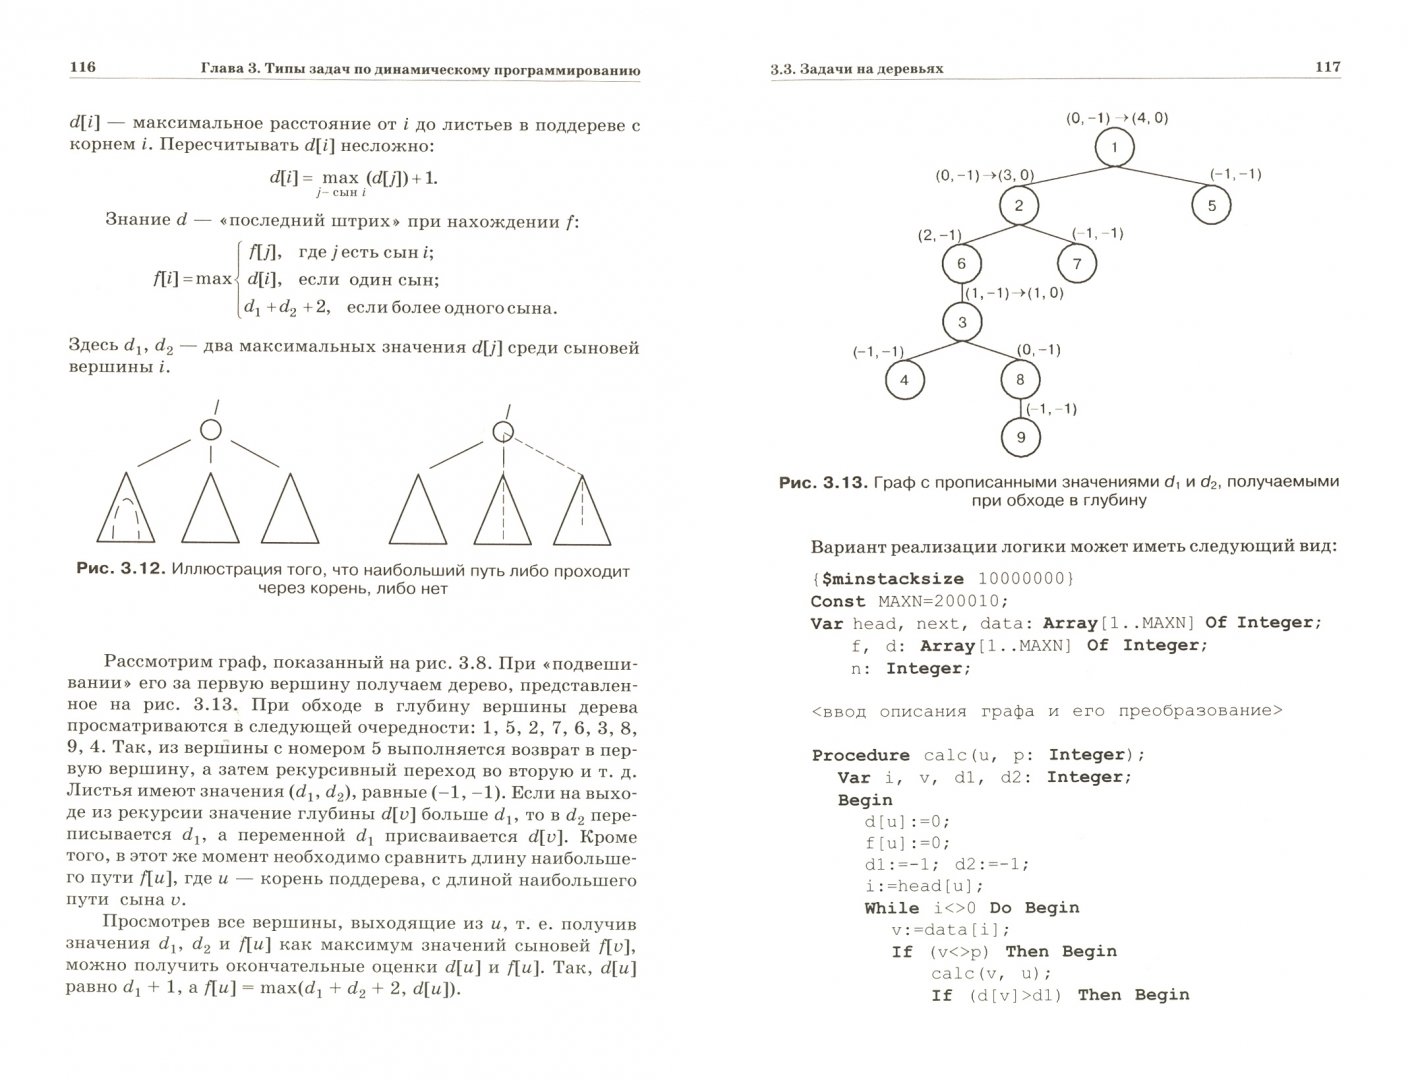 Иллюстрация 1 из 5 для Динамическое программирование - Окулов, Пестов | Лабиринт - книги. Источник: Лабиринт